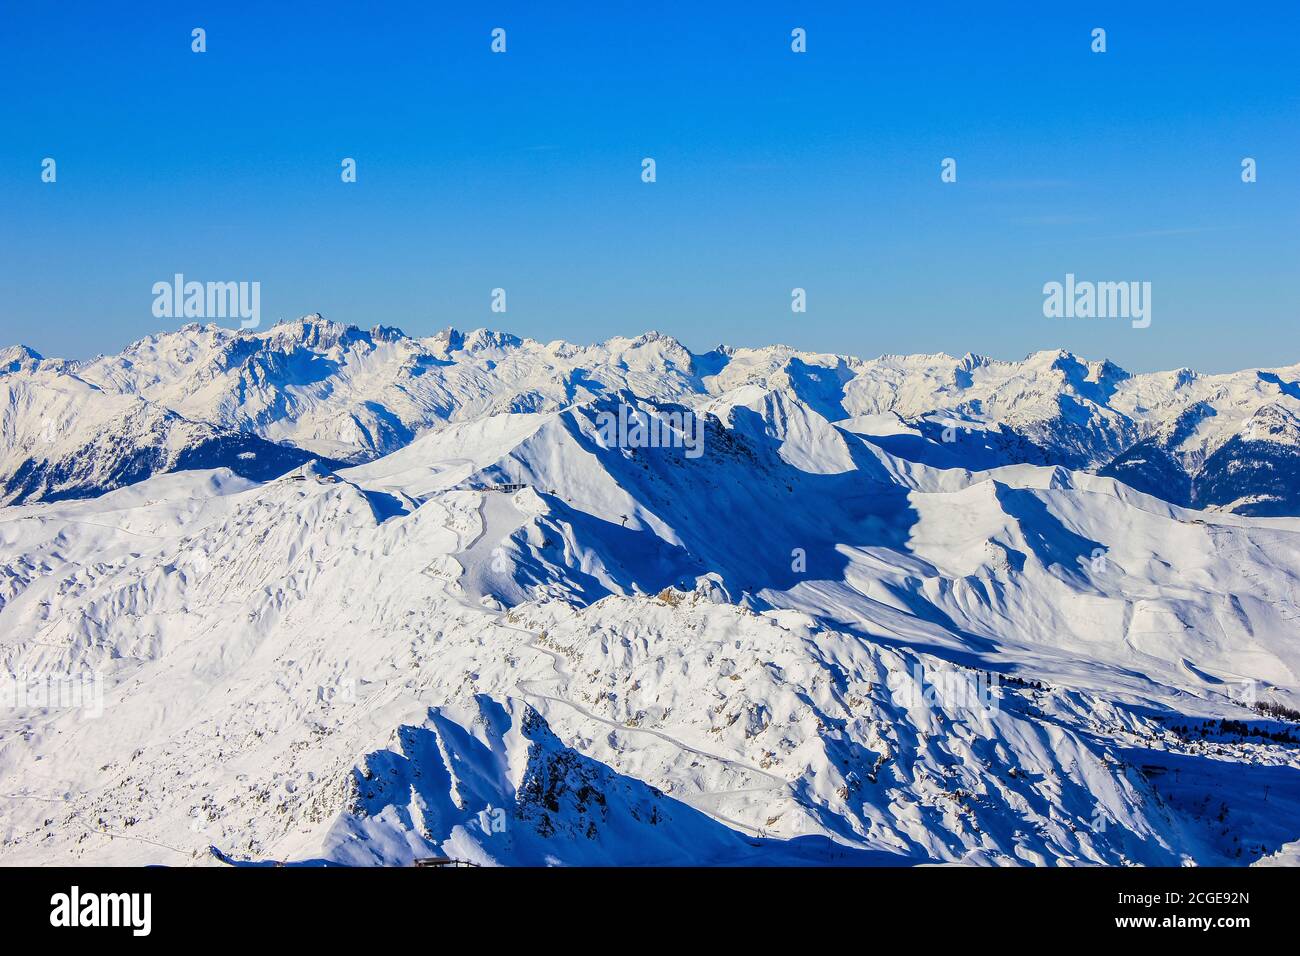 Vue sur le domaine skiable de la Plagne, Alpes françaises Banque D'Images